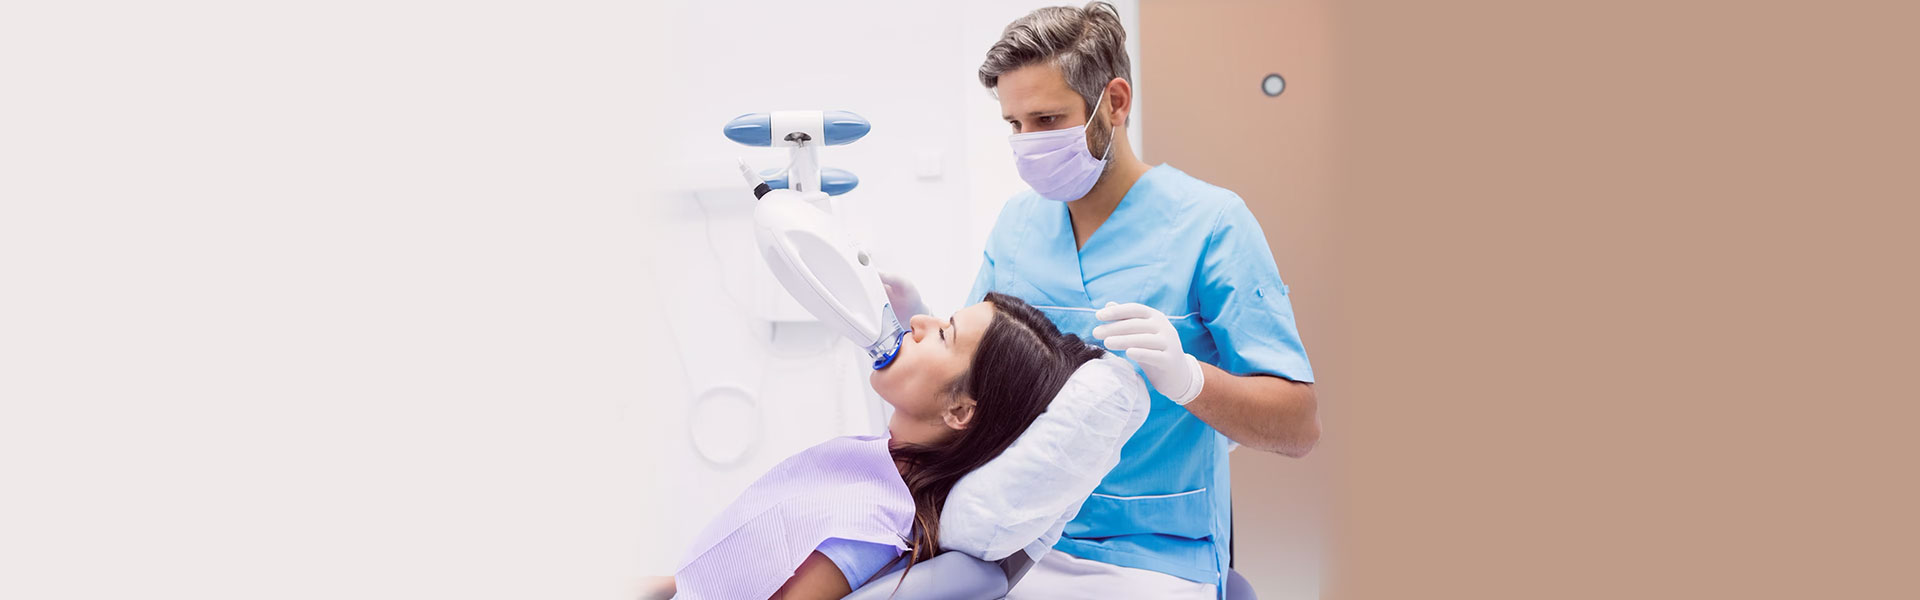 How Does Sedation Work for Dental Procedures?